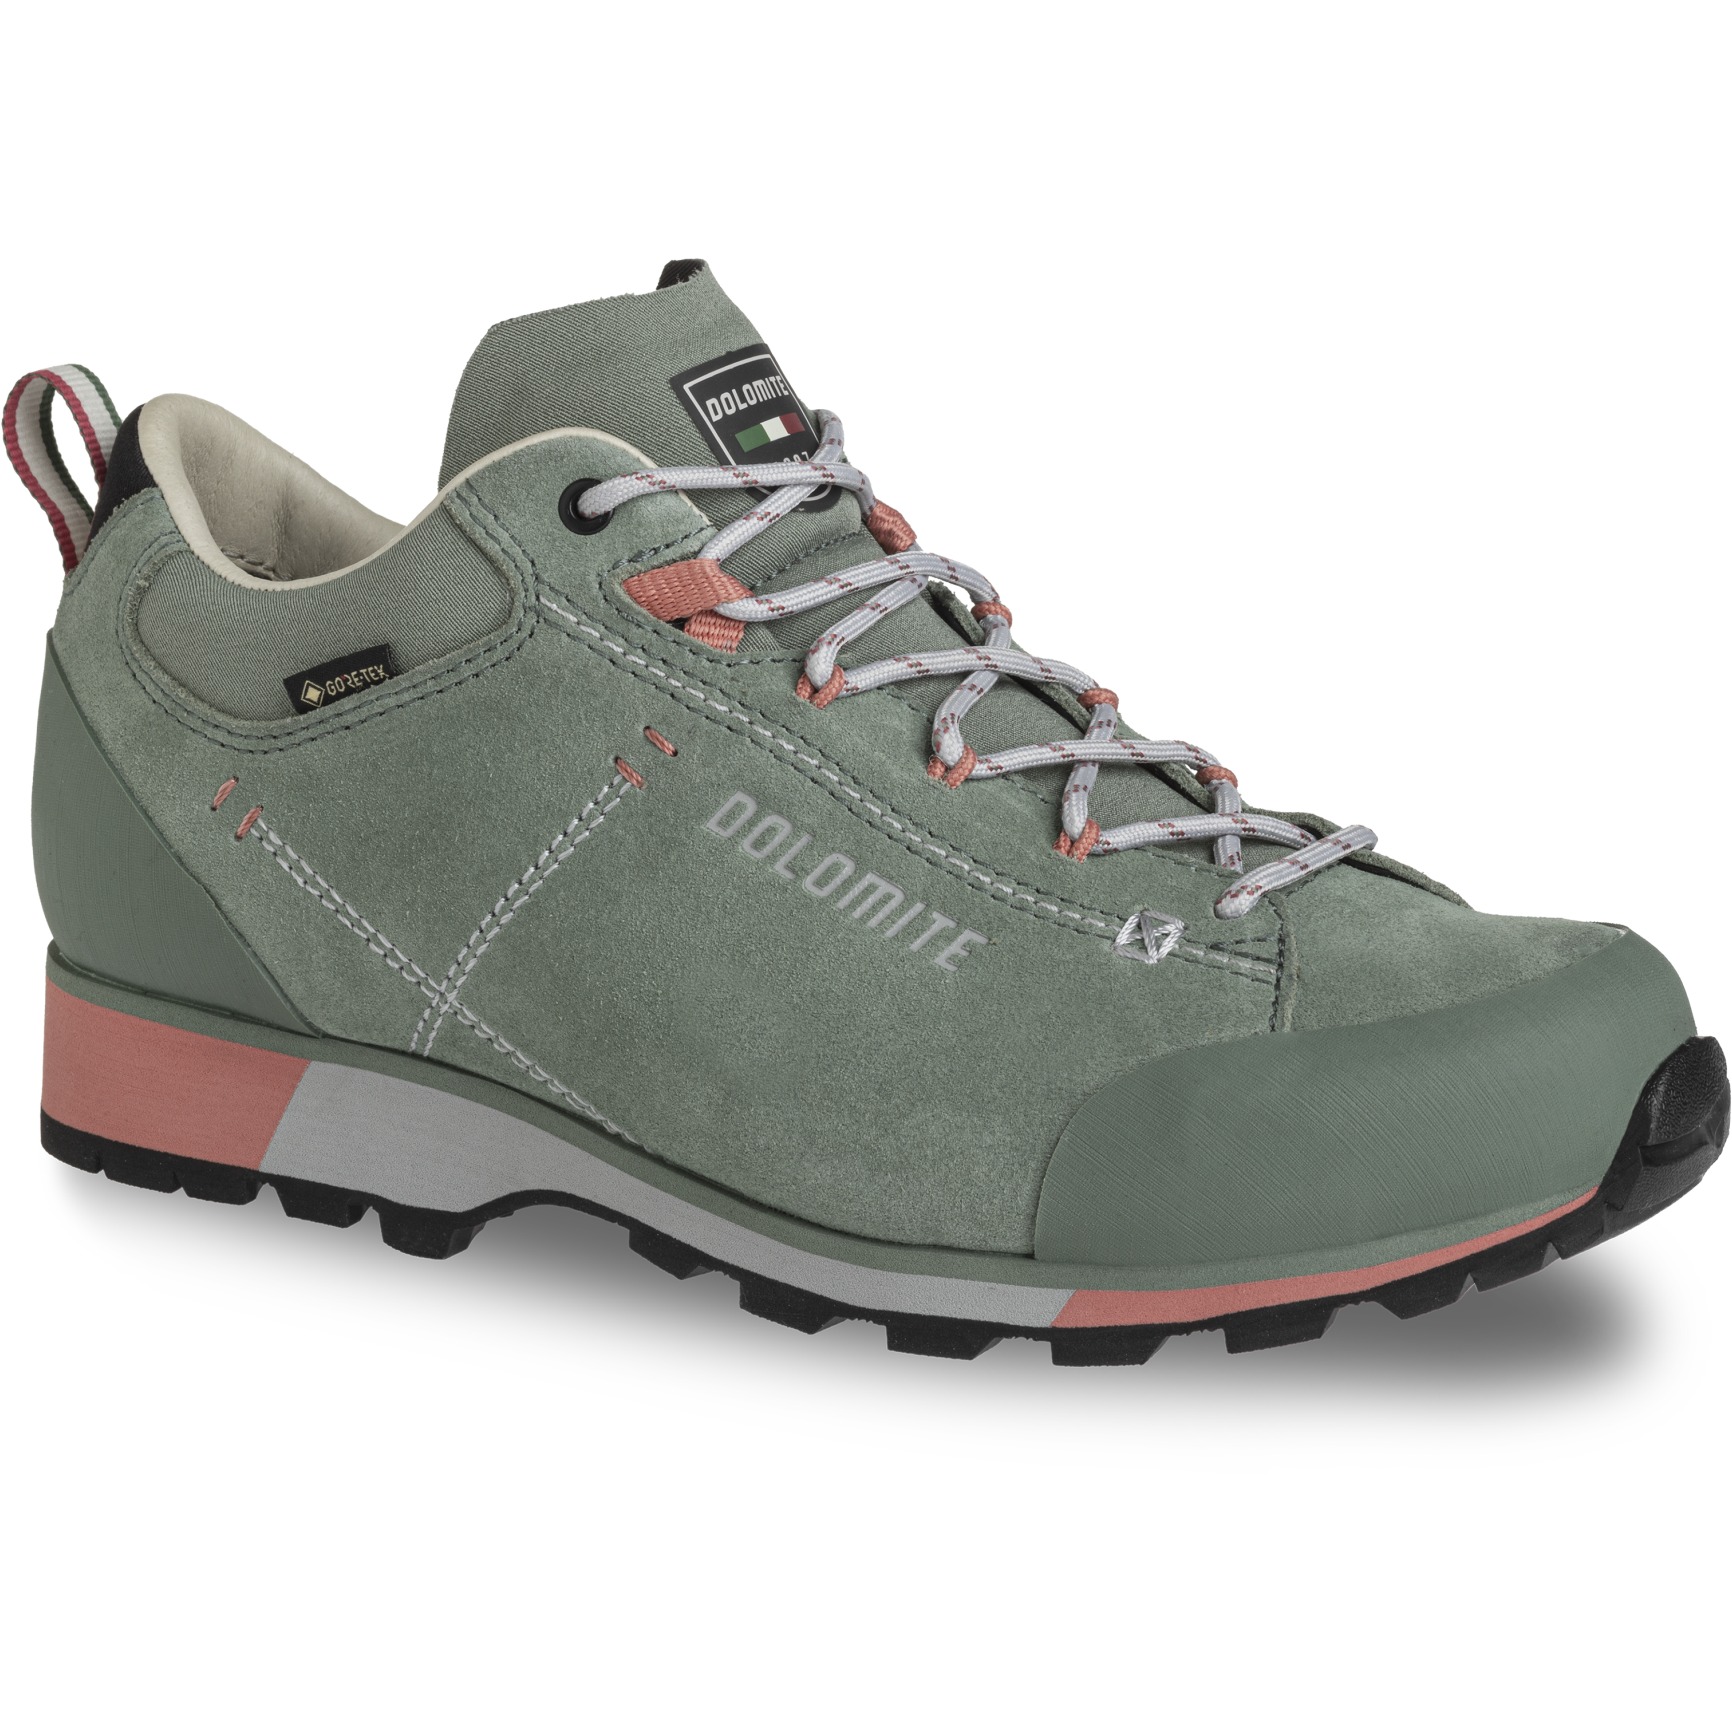 Produktbild von Dolomite 54 Hike Low Evo GORE-TEX Schuhe Damen - sage green